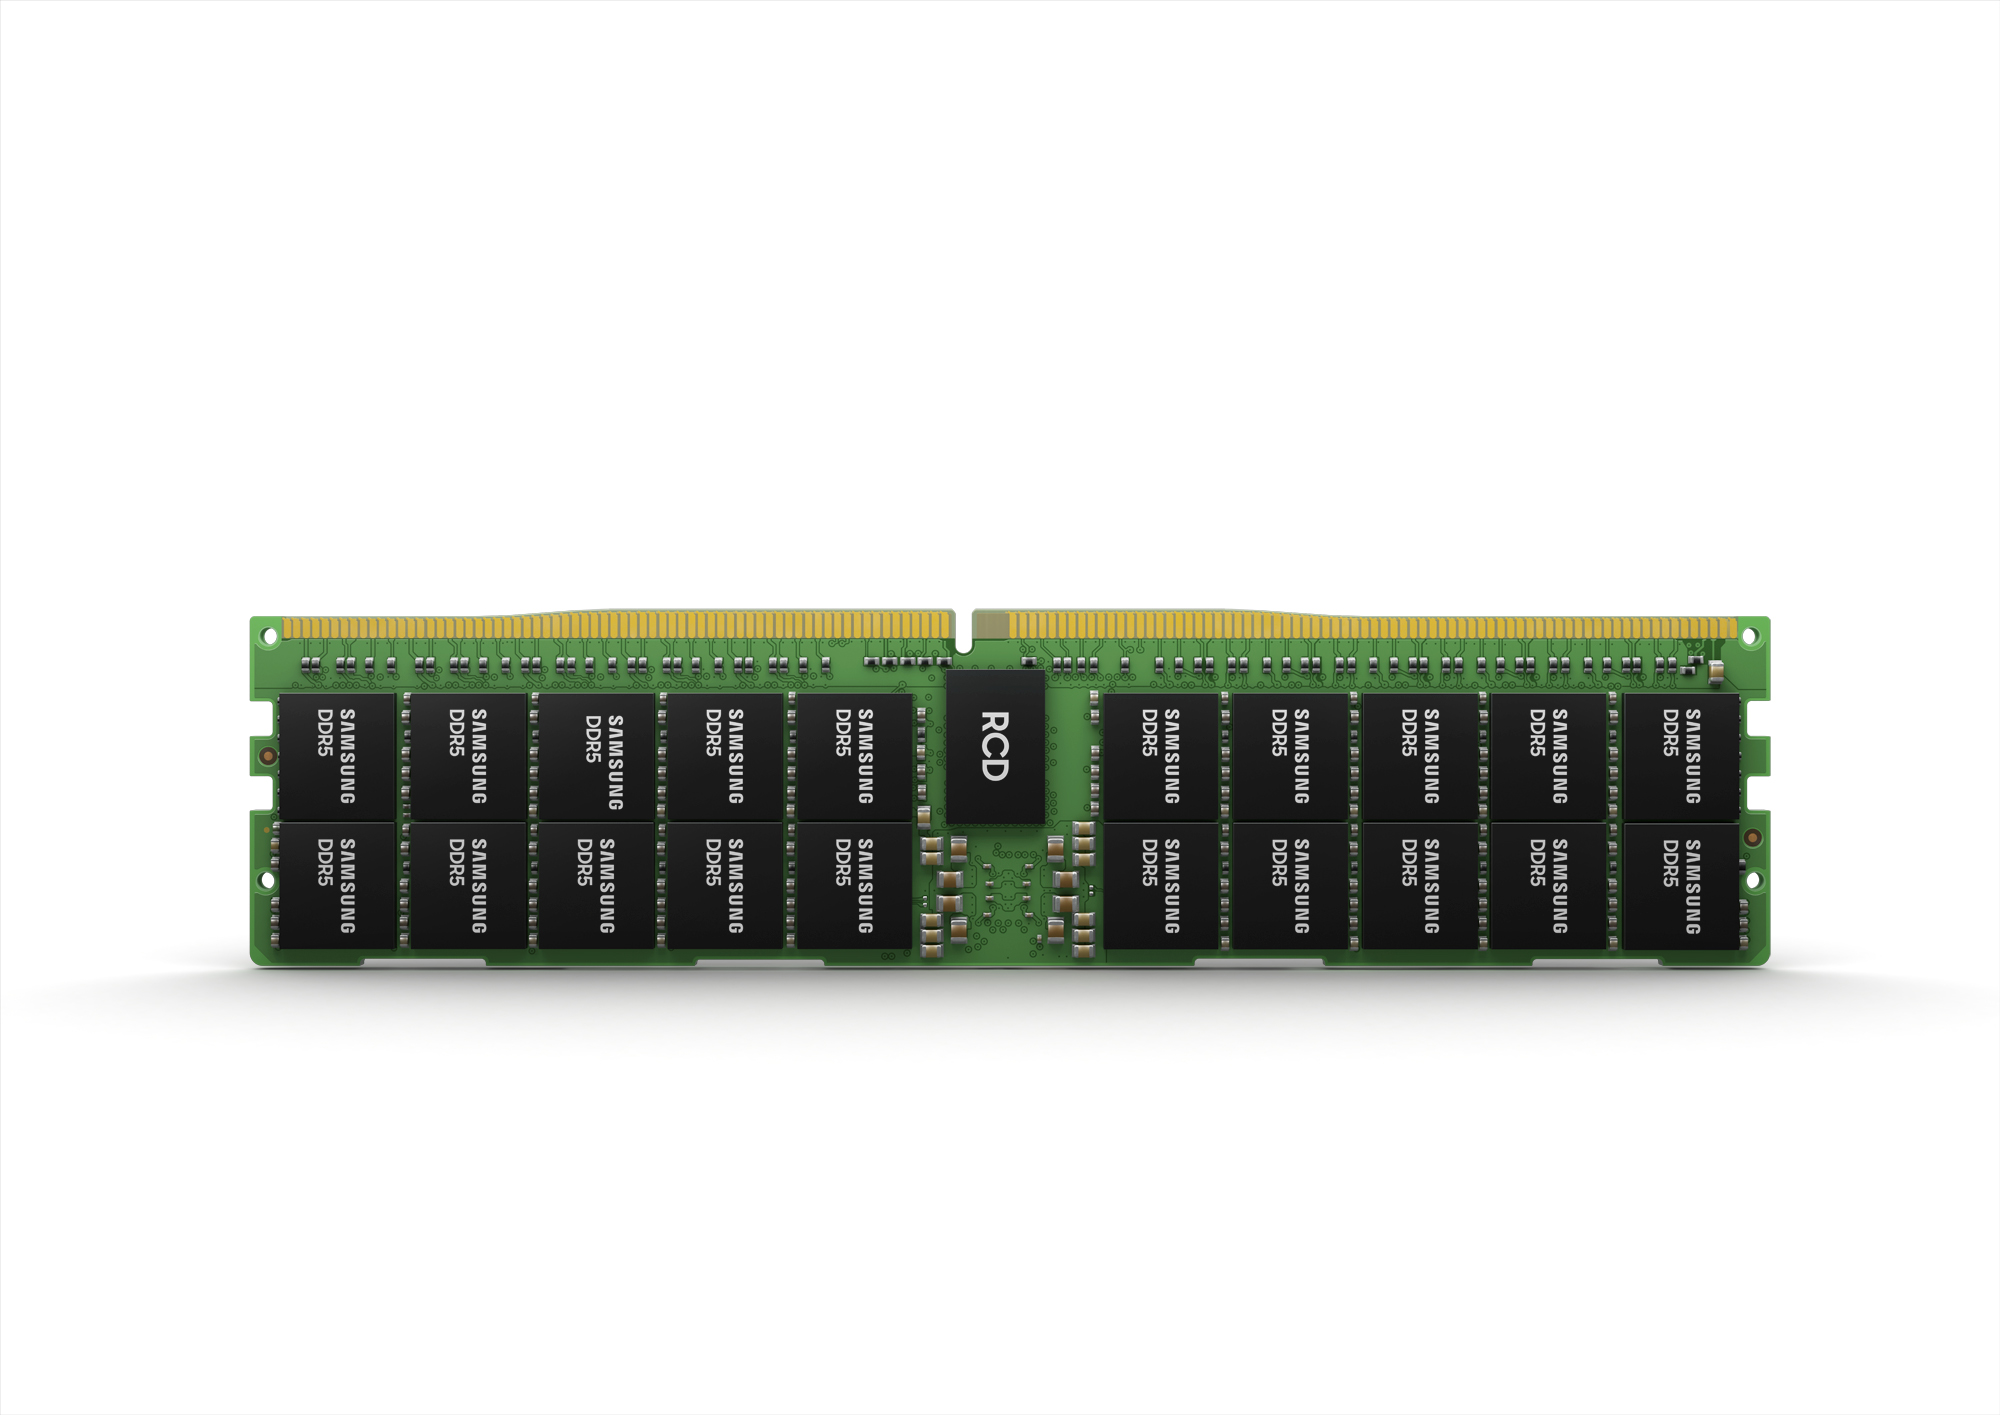 Immagine pubblicata in relazione al seguente contenuto: Samsung annuncia lo sviluppo di moduli di memoria DDR5 da 512GB | Nome immagine: news31852_Samsung-DDR5-512GB_2.jpg